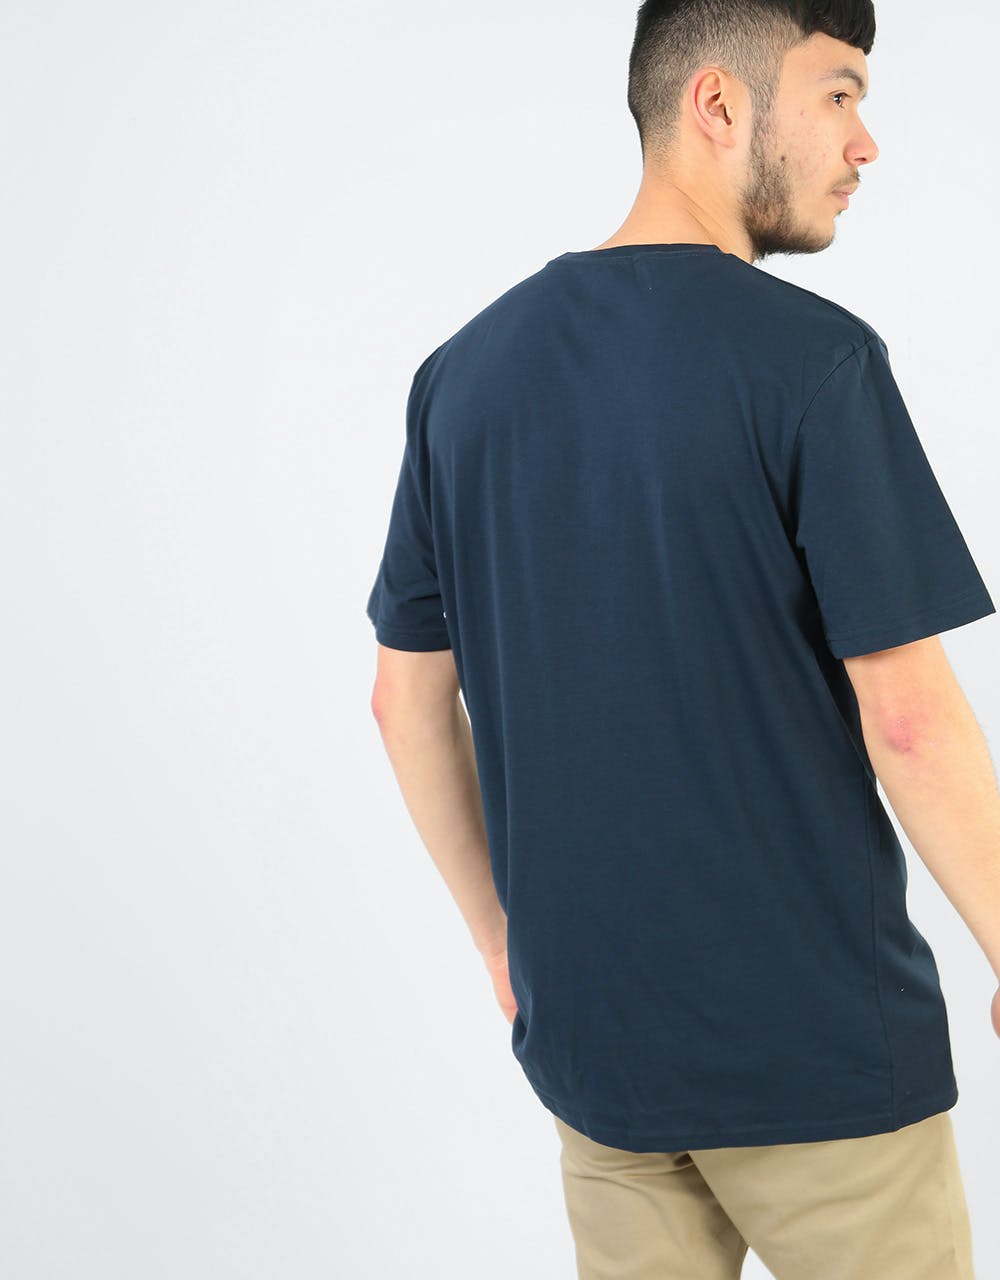 Volcom Stone Blank T-Shirt - Navy